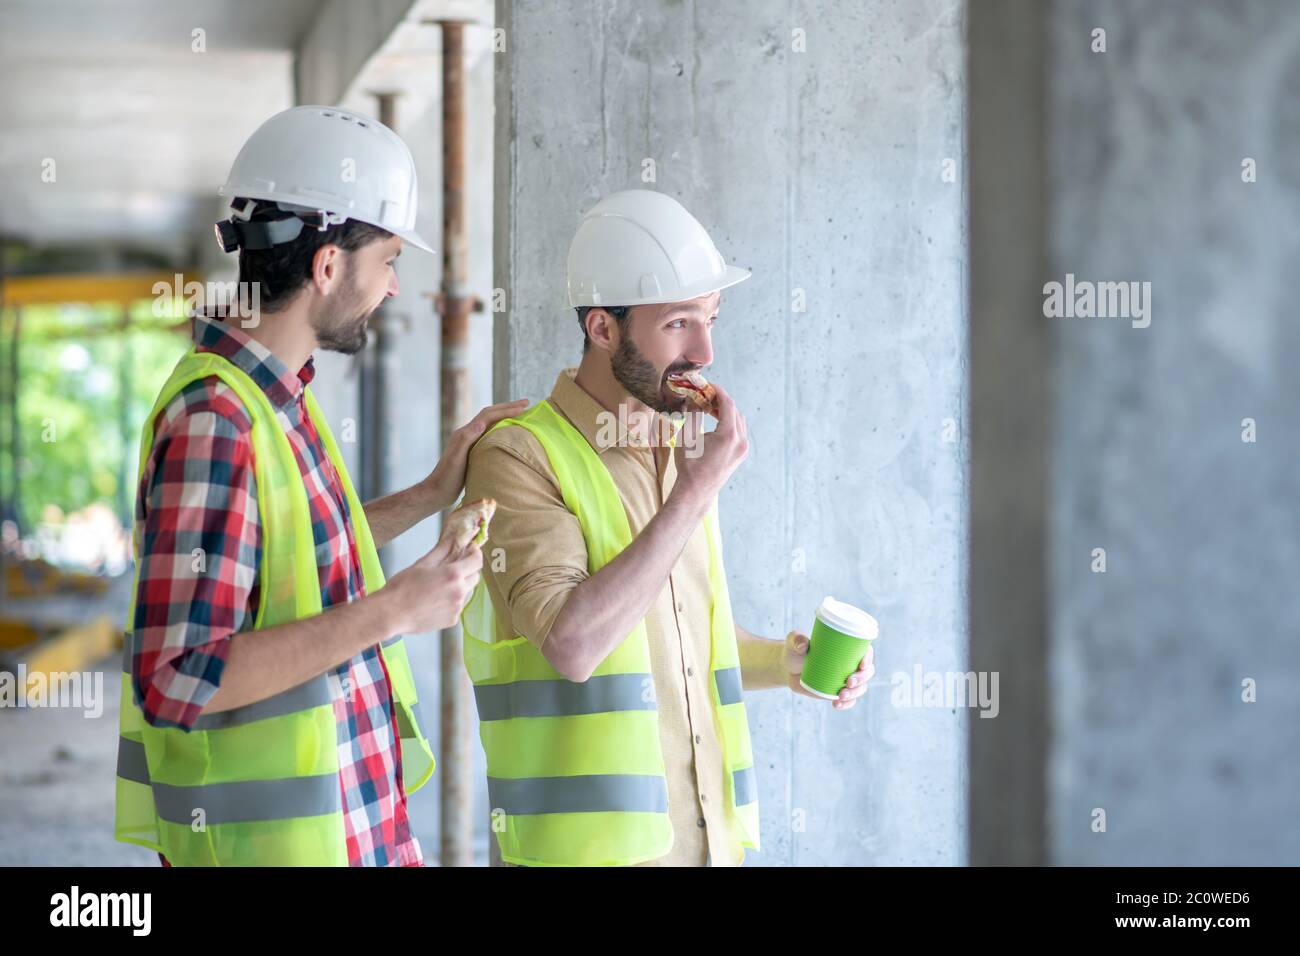 Costruire lavoratori in giubbotti e caschi gialli con caffè con panini, discutere qualcosa Foto Stock